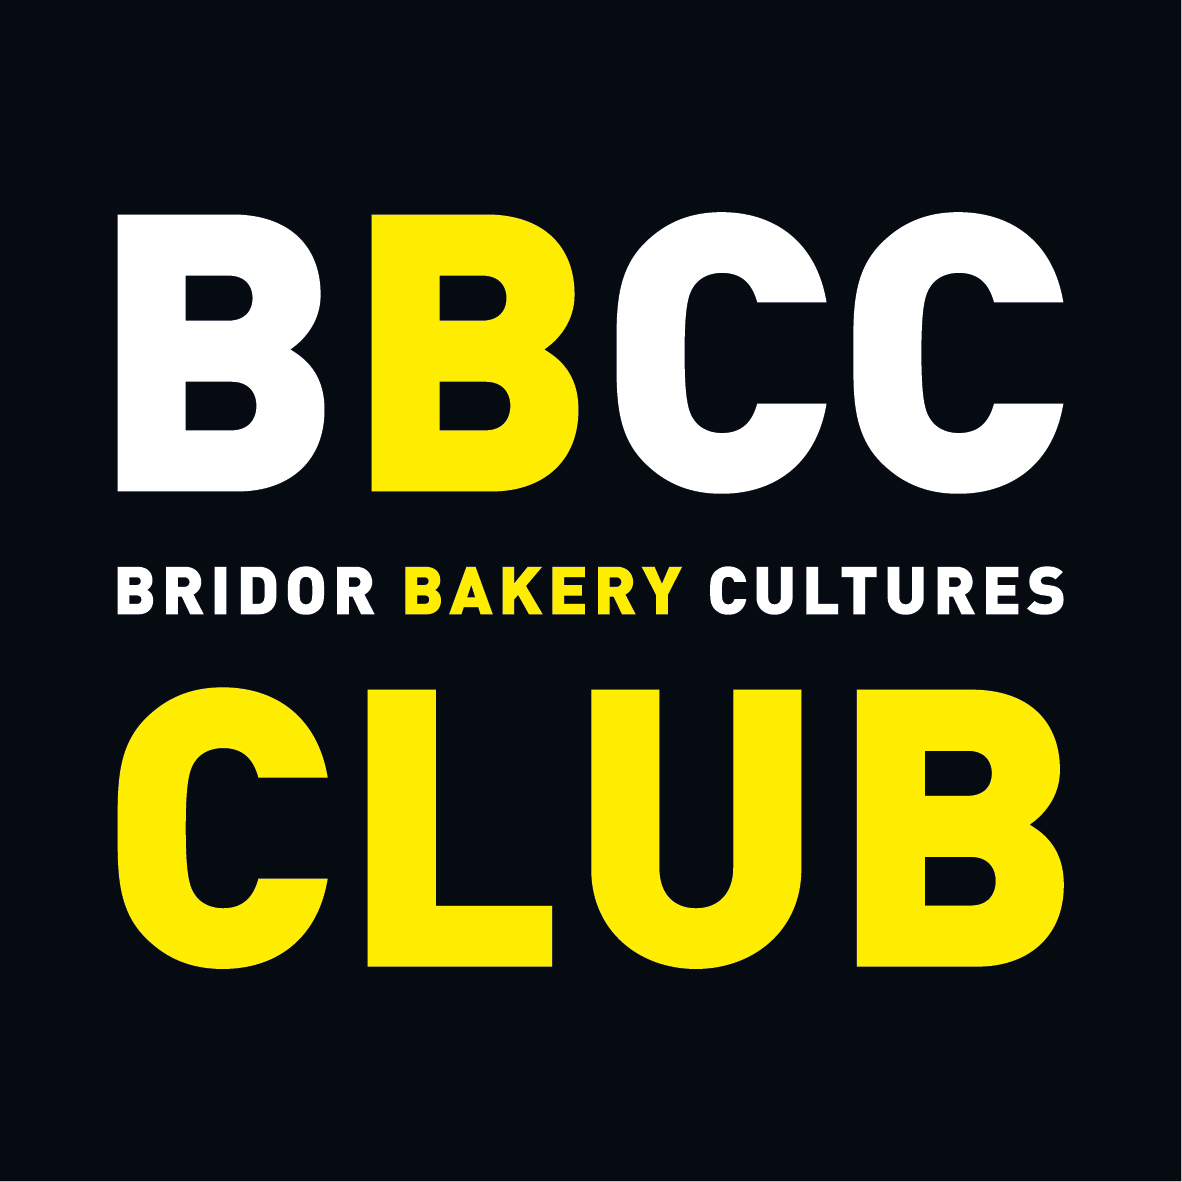 BBCC CLUB LOGO - RVB.jpg